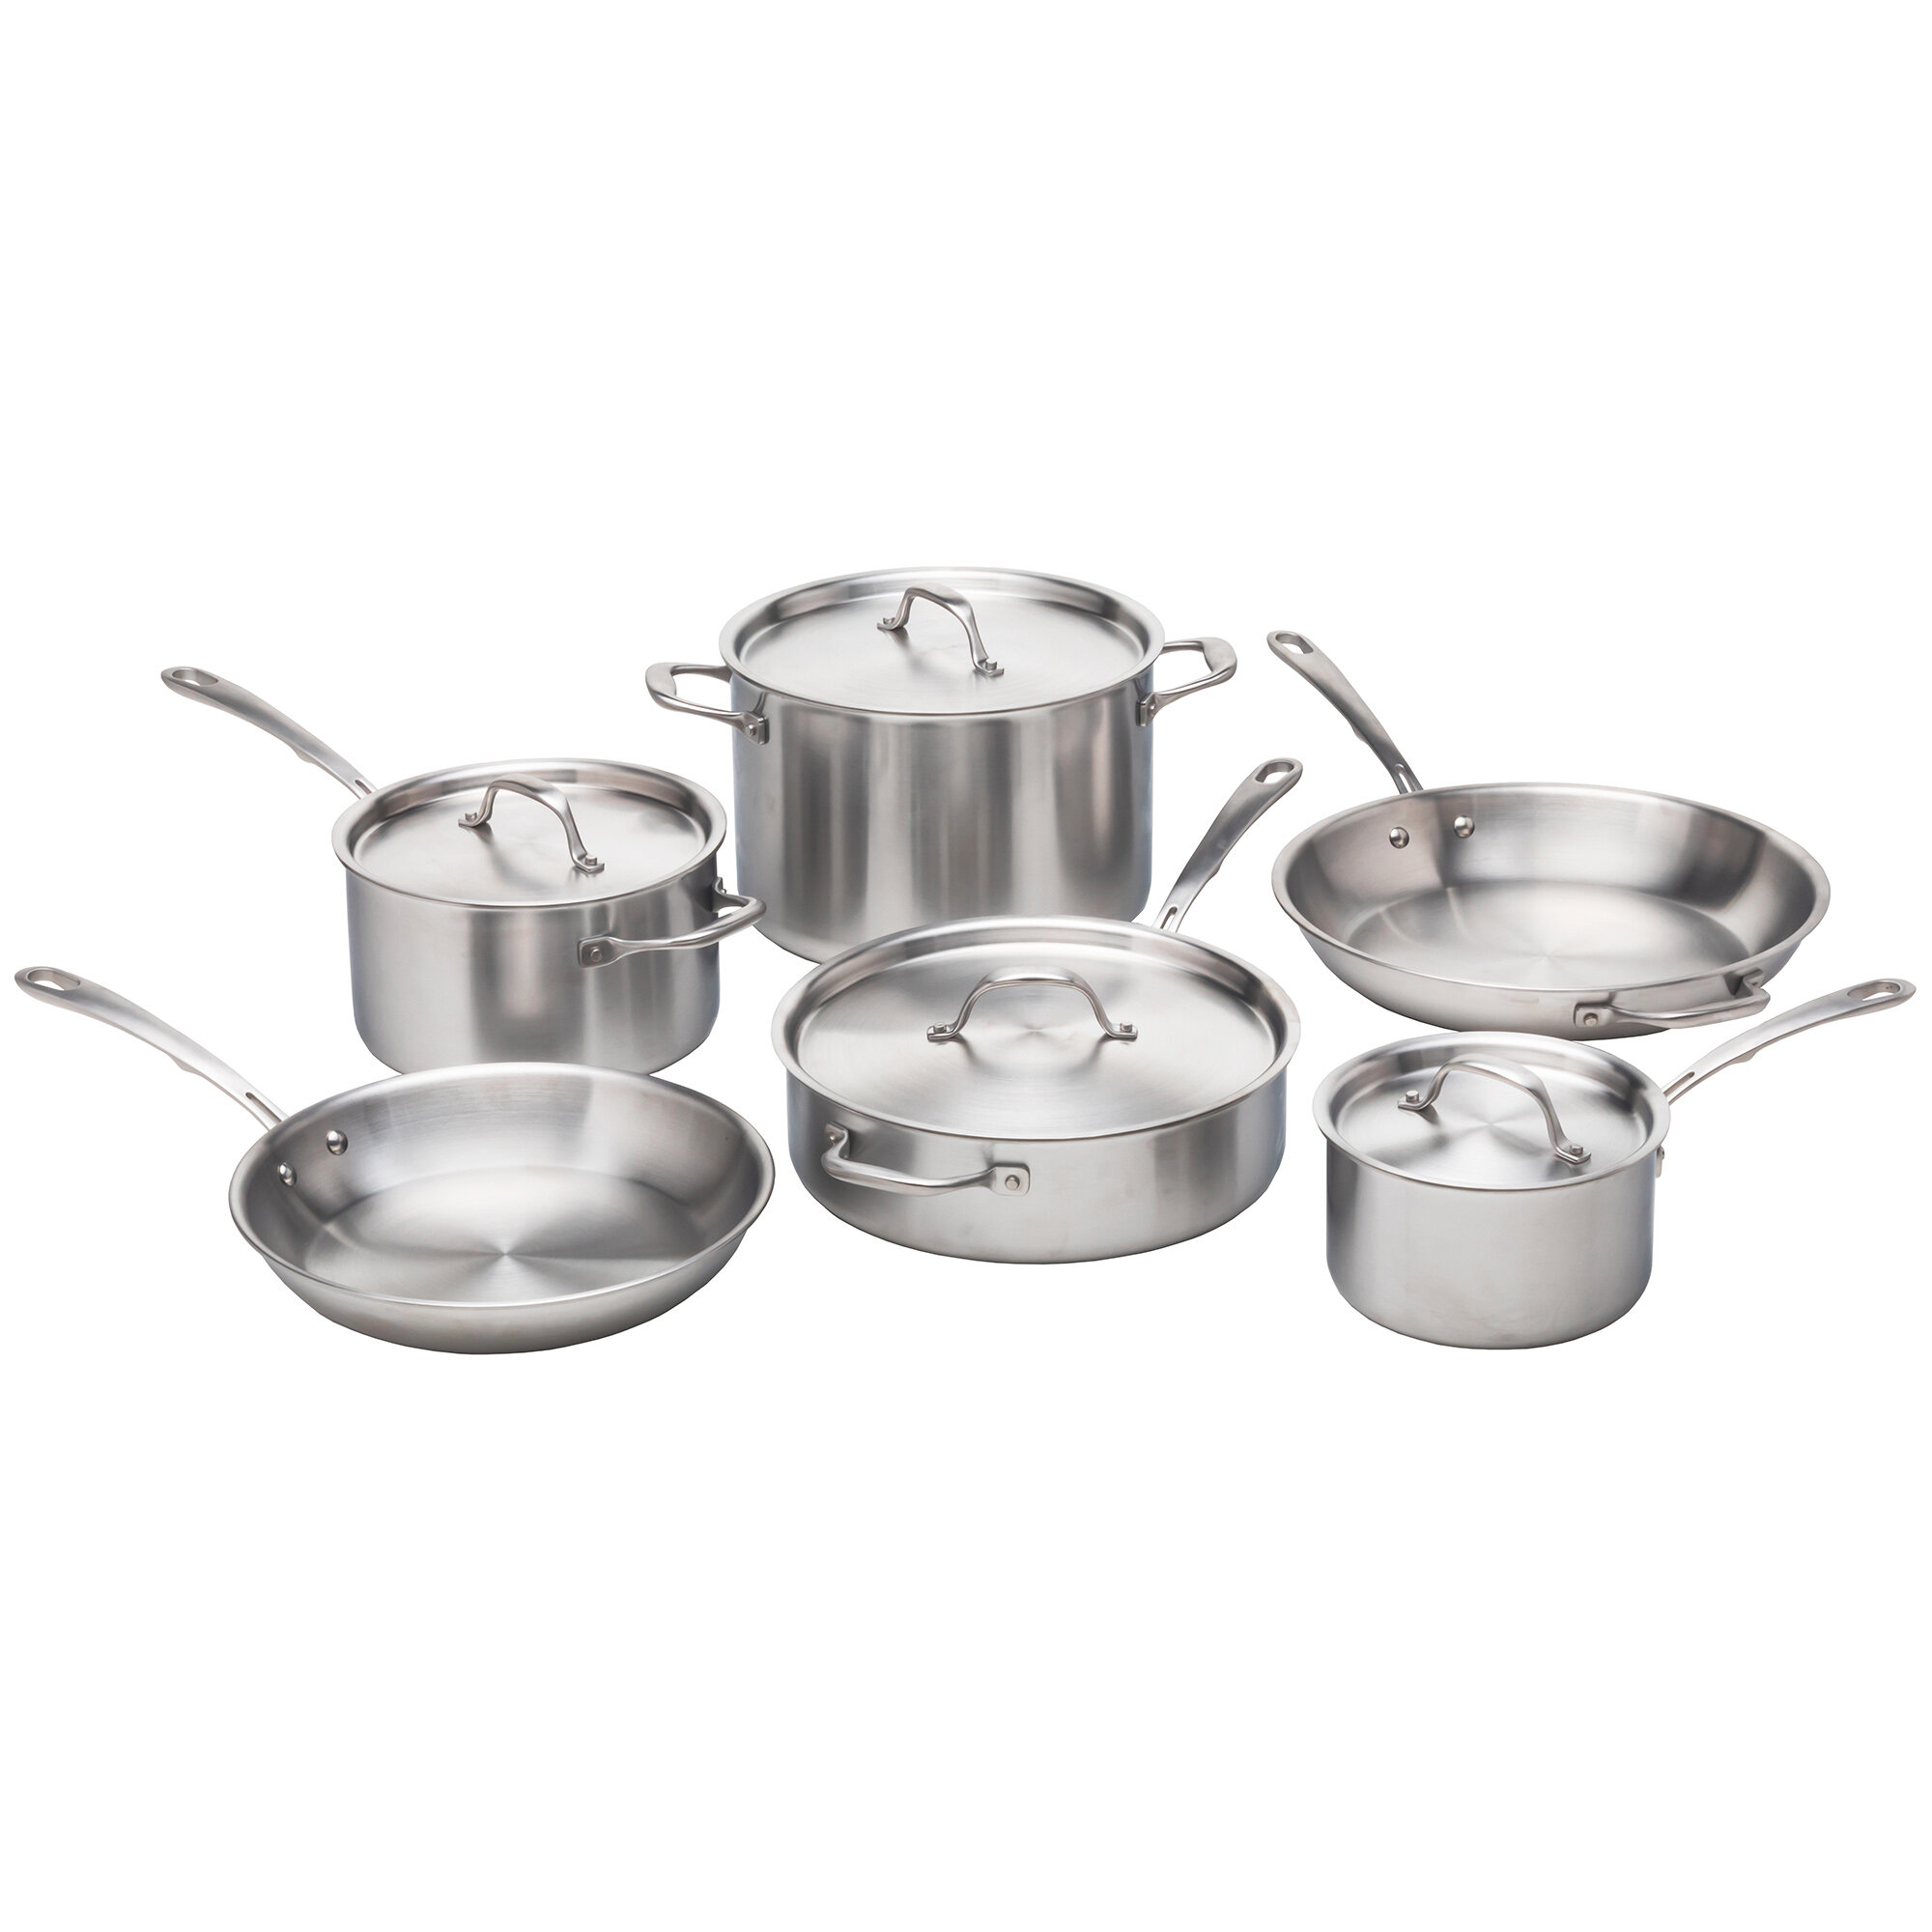 https://assets.wfcdn.com/im/26105878/compr-r85/1780/178064299/10-piece-stainless-steel-1810-cookware-set.jpg